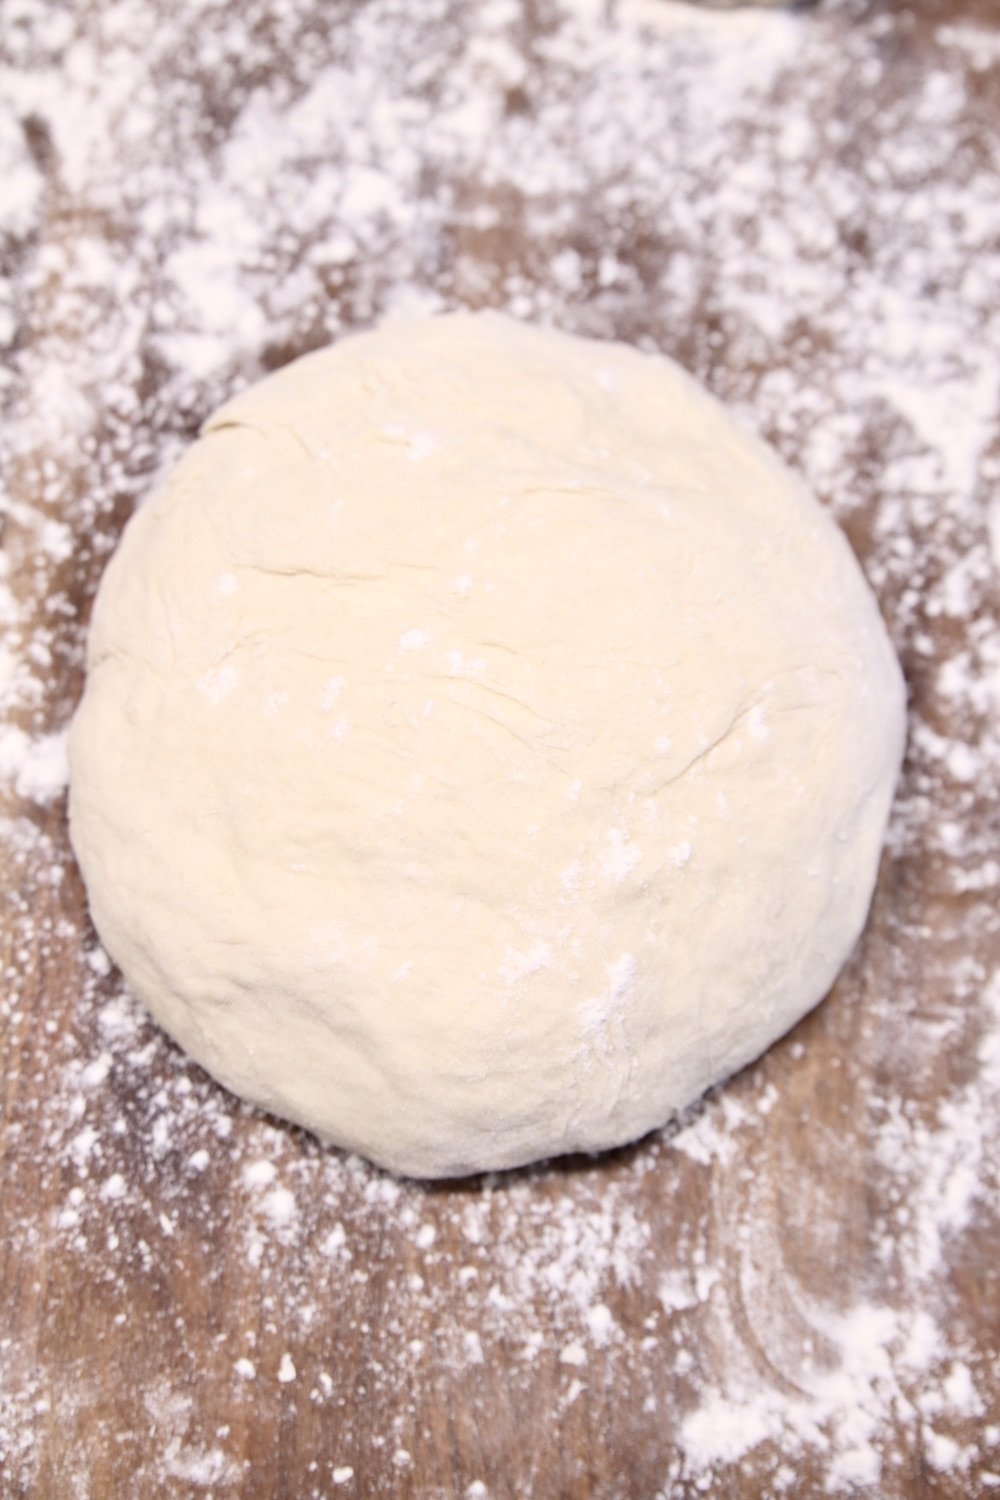 Pizza dough on a floured board